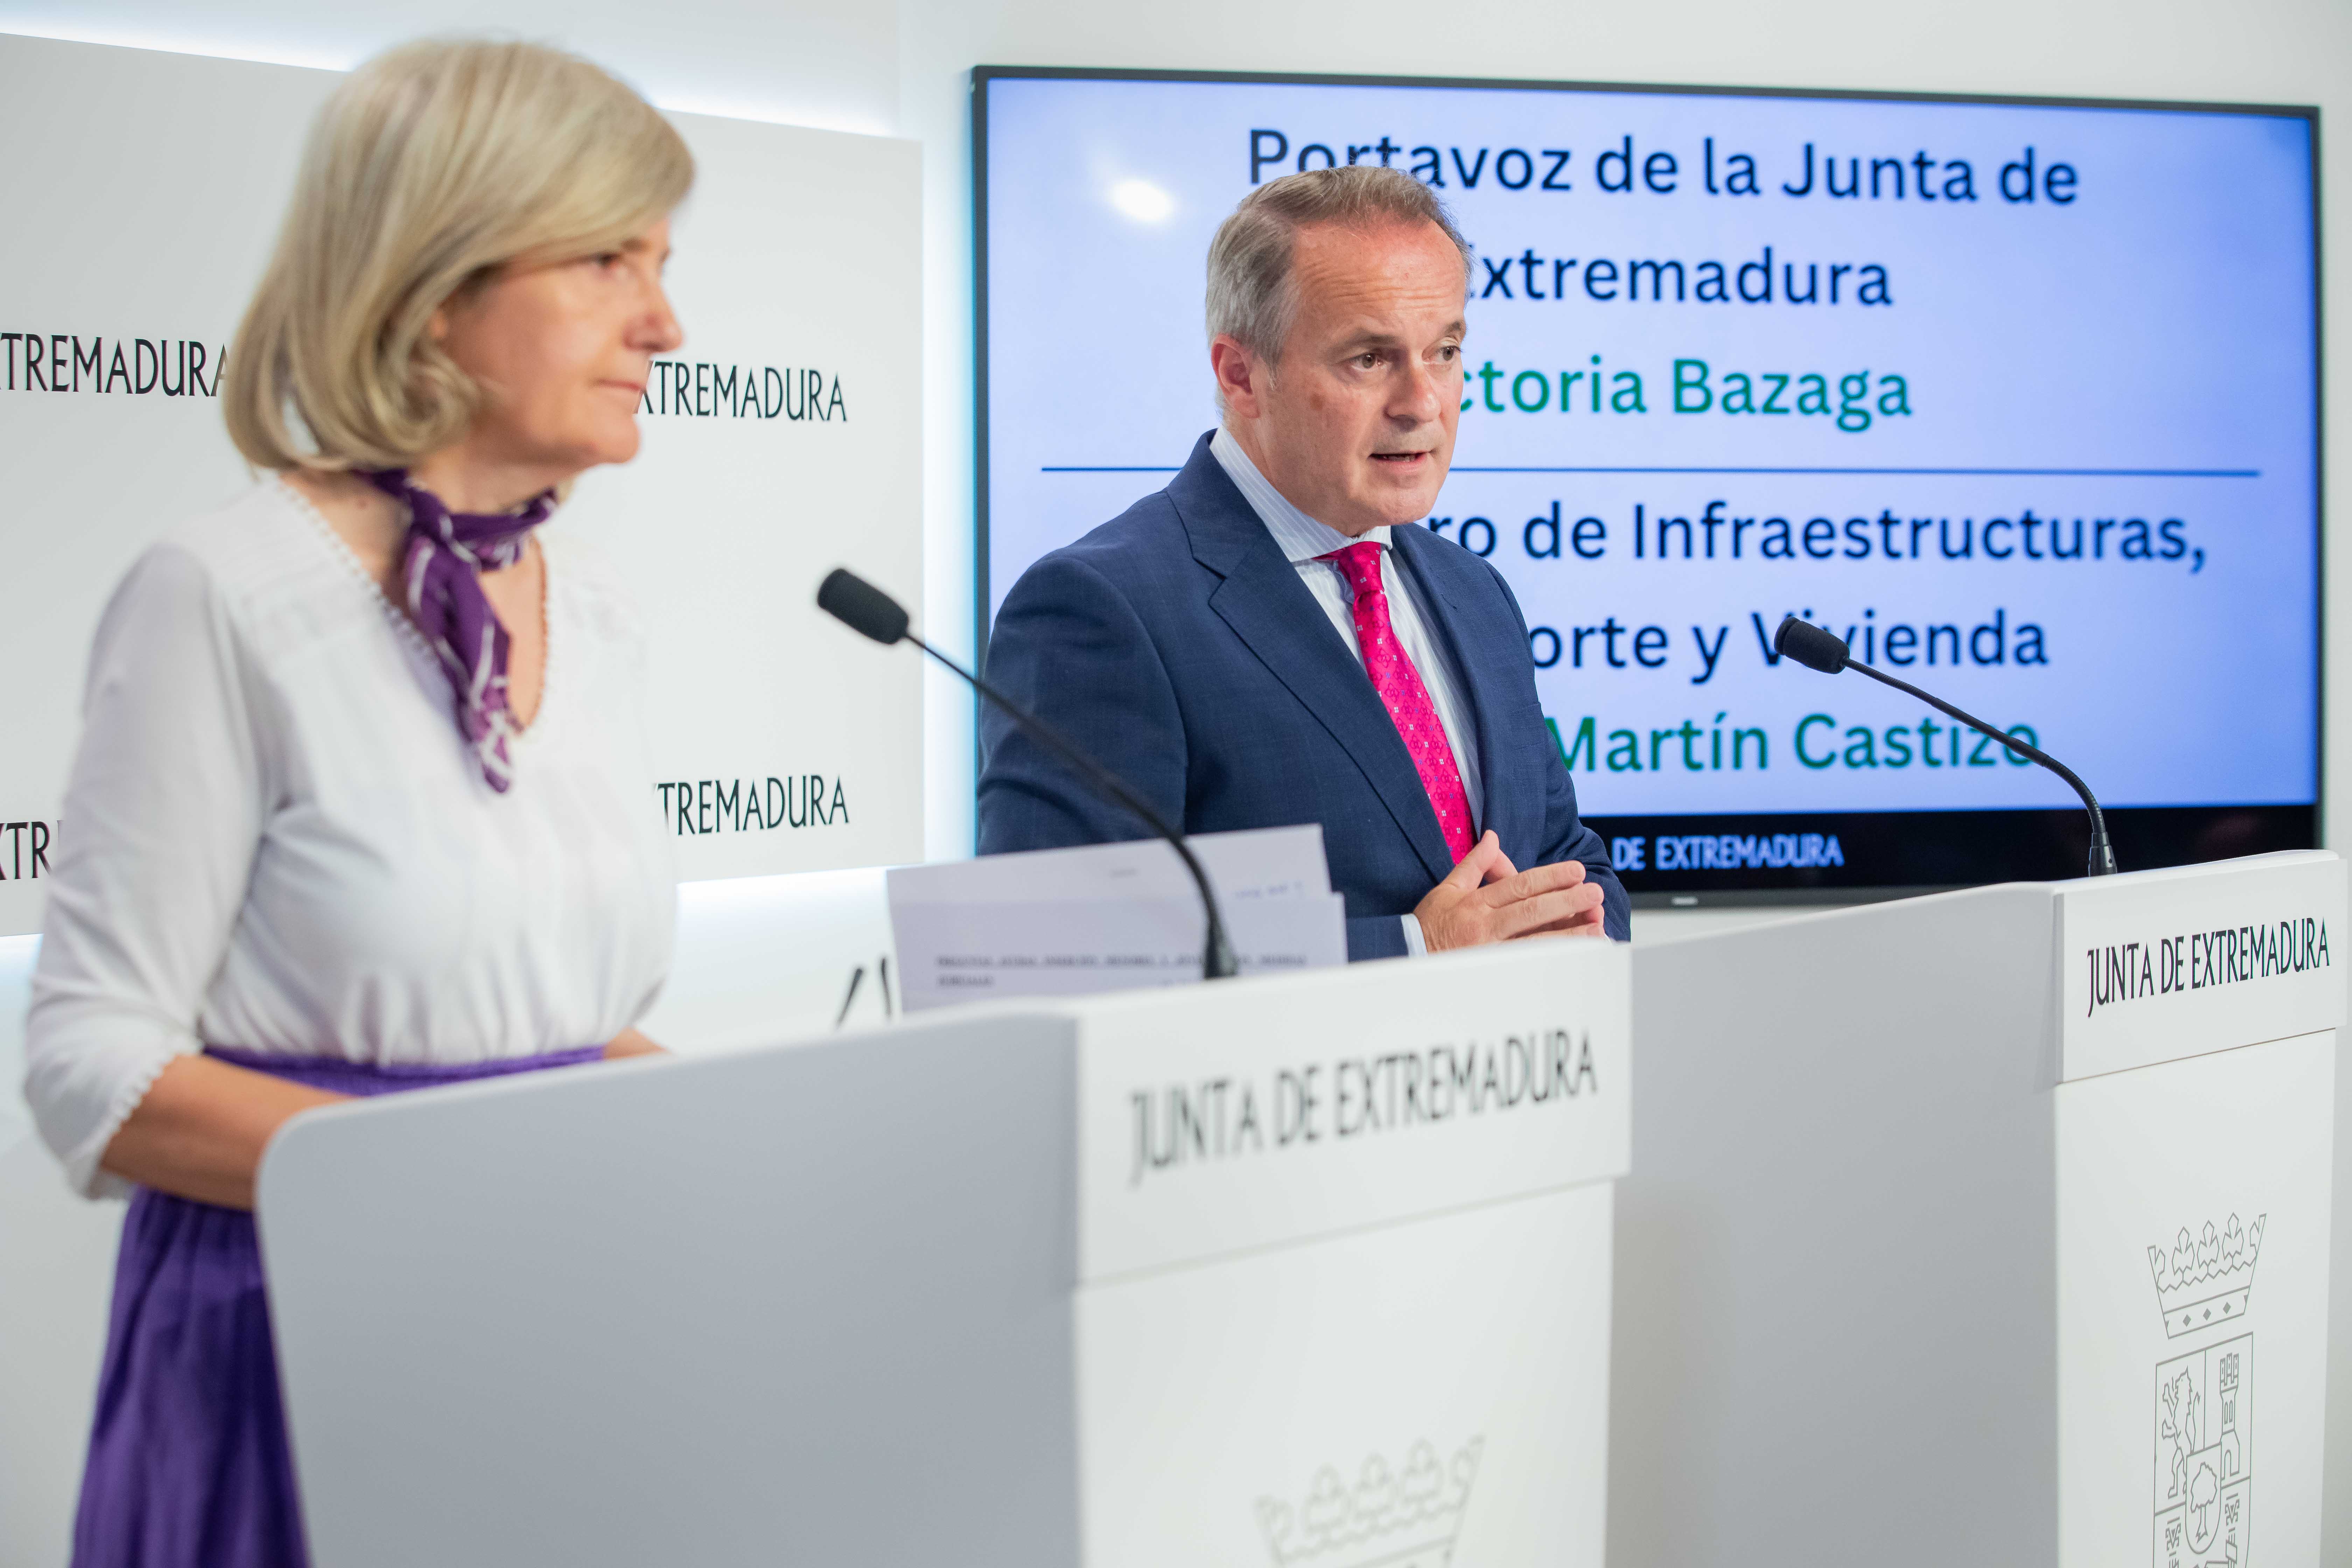 La portavoz de la Junta de Extremadura, Victoria Bazaga; y el consejero de Infraestructuras, Transporte y Vivienda, Manuel Martín Castizo, durante la rueda de prensa.